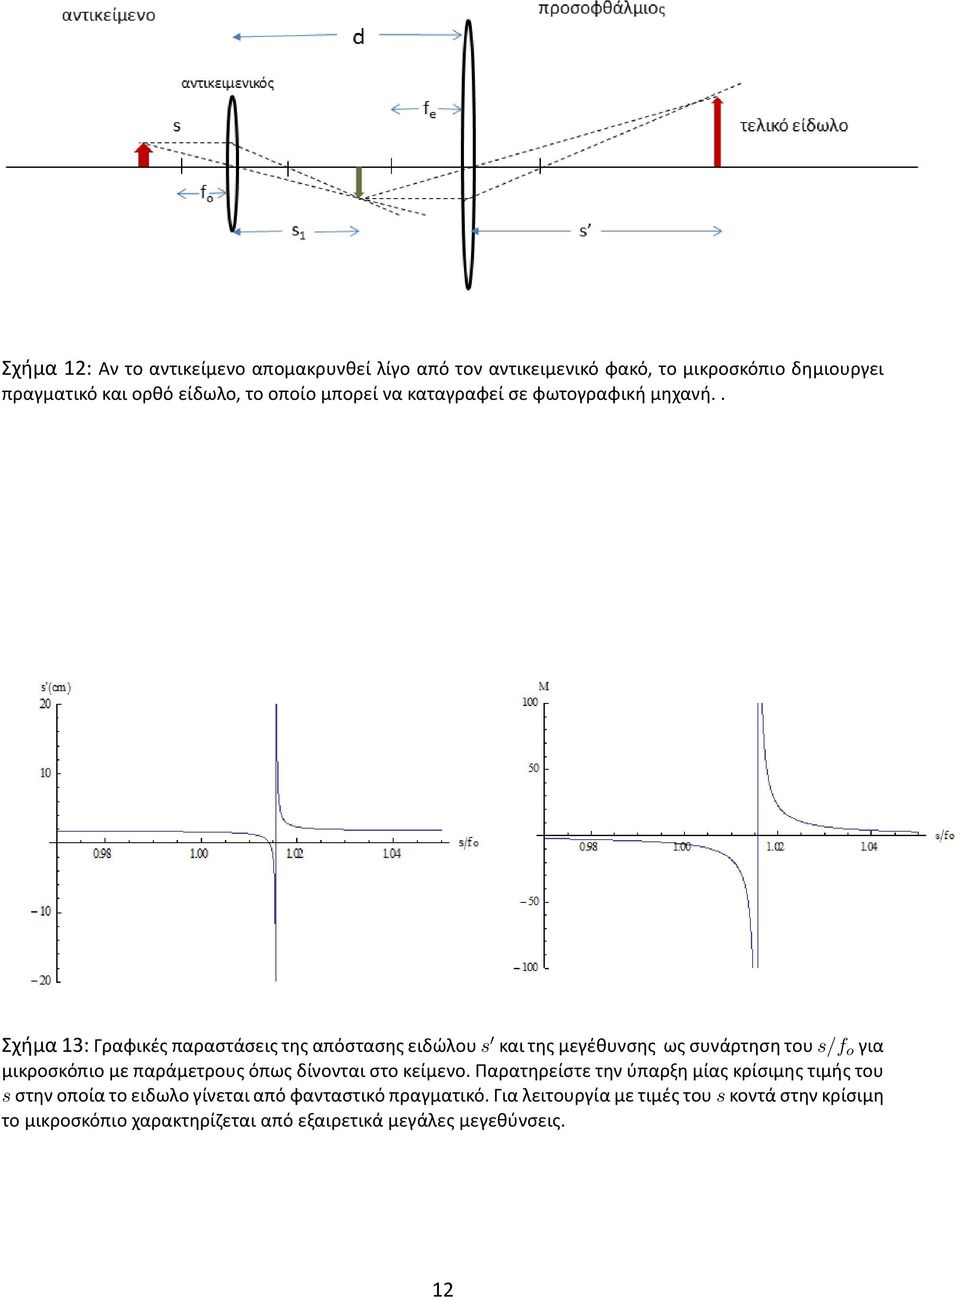 . Σχήμα 13: Γραφικές παραστάσεις της απόστασης ειδώλου s και της μεγέθυνσης ως συνάρτηση του s/f o για μικροσκόπιο με παράμετρους όπως